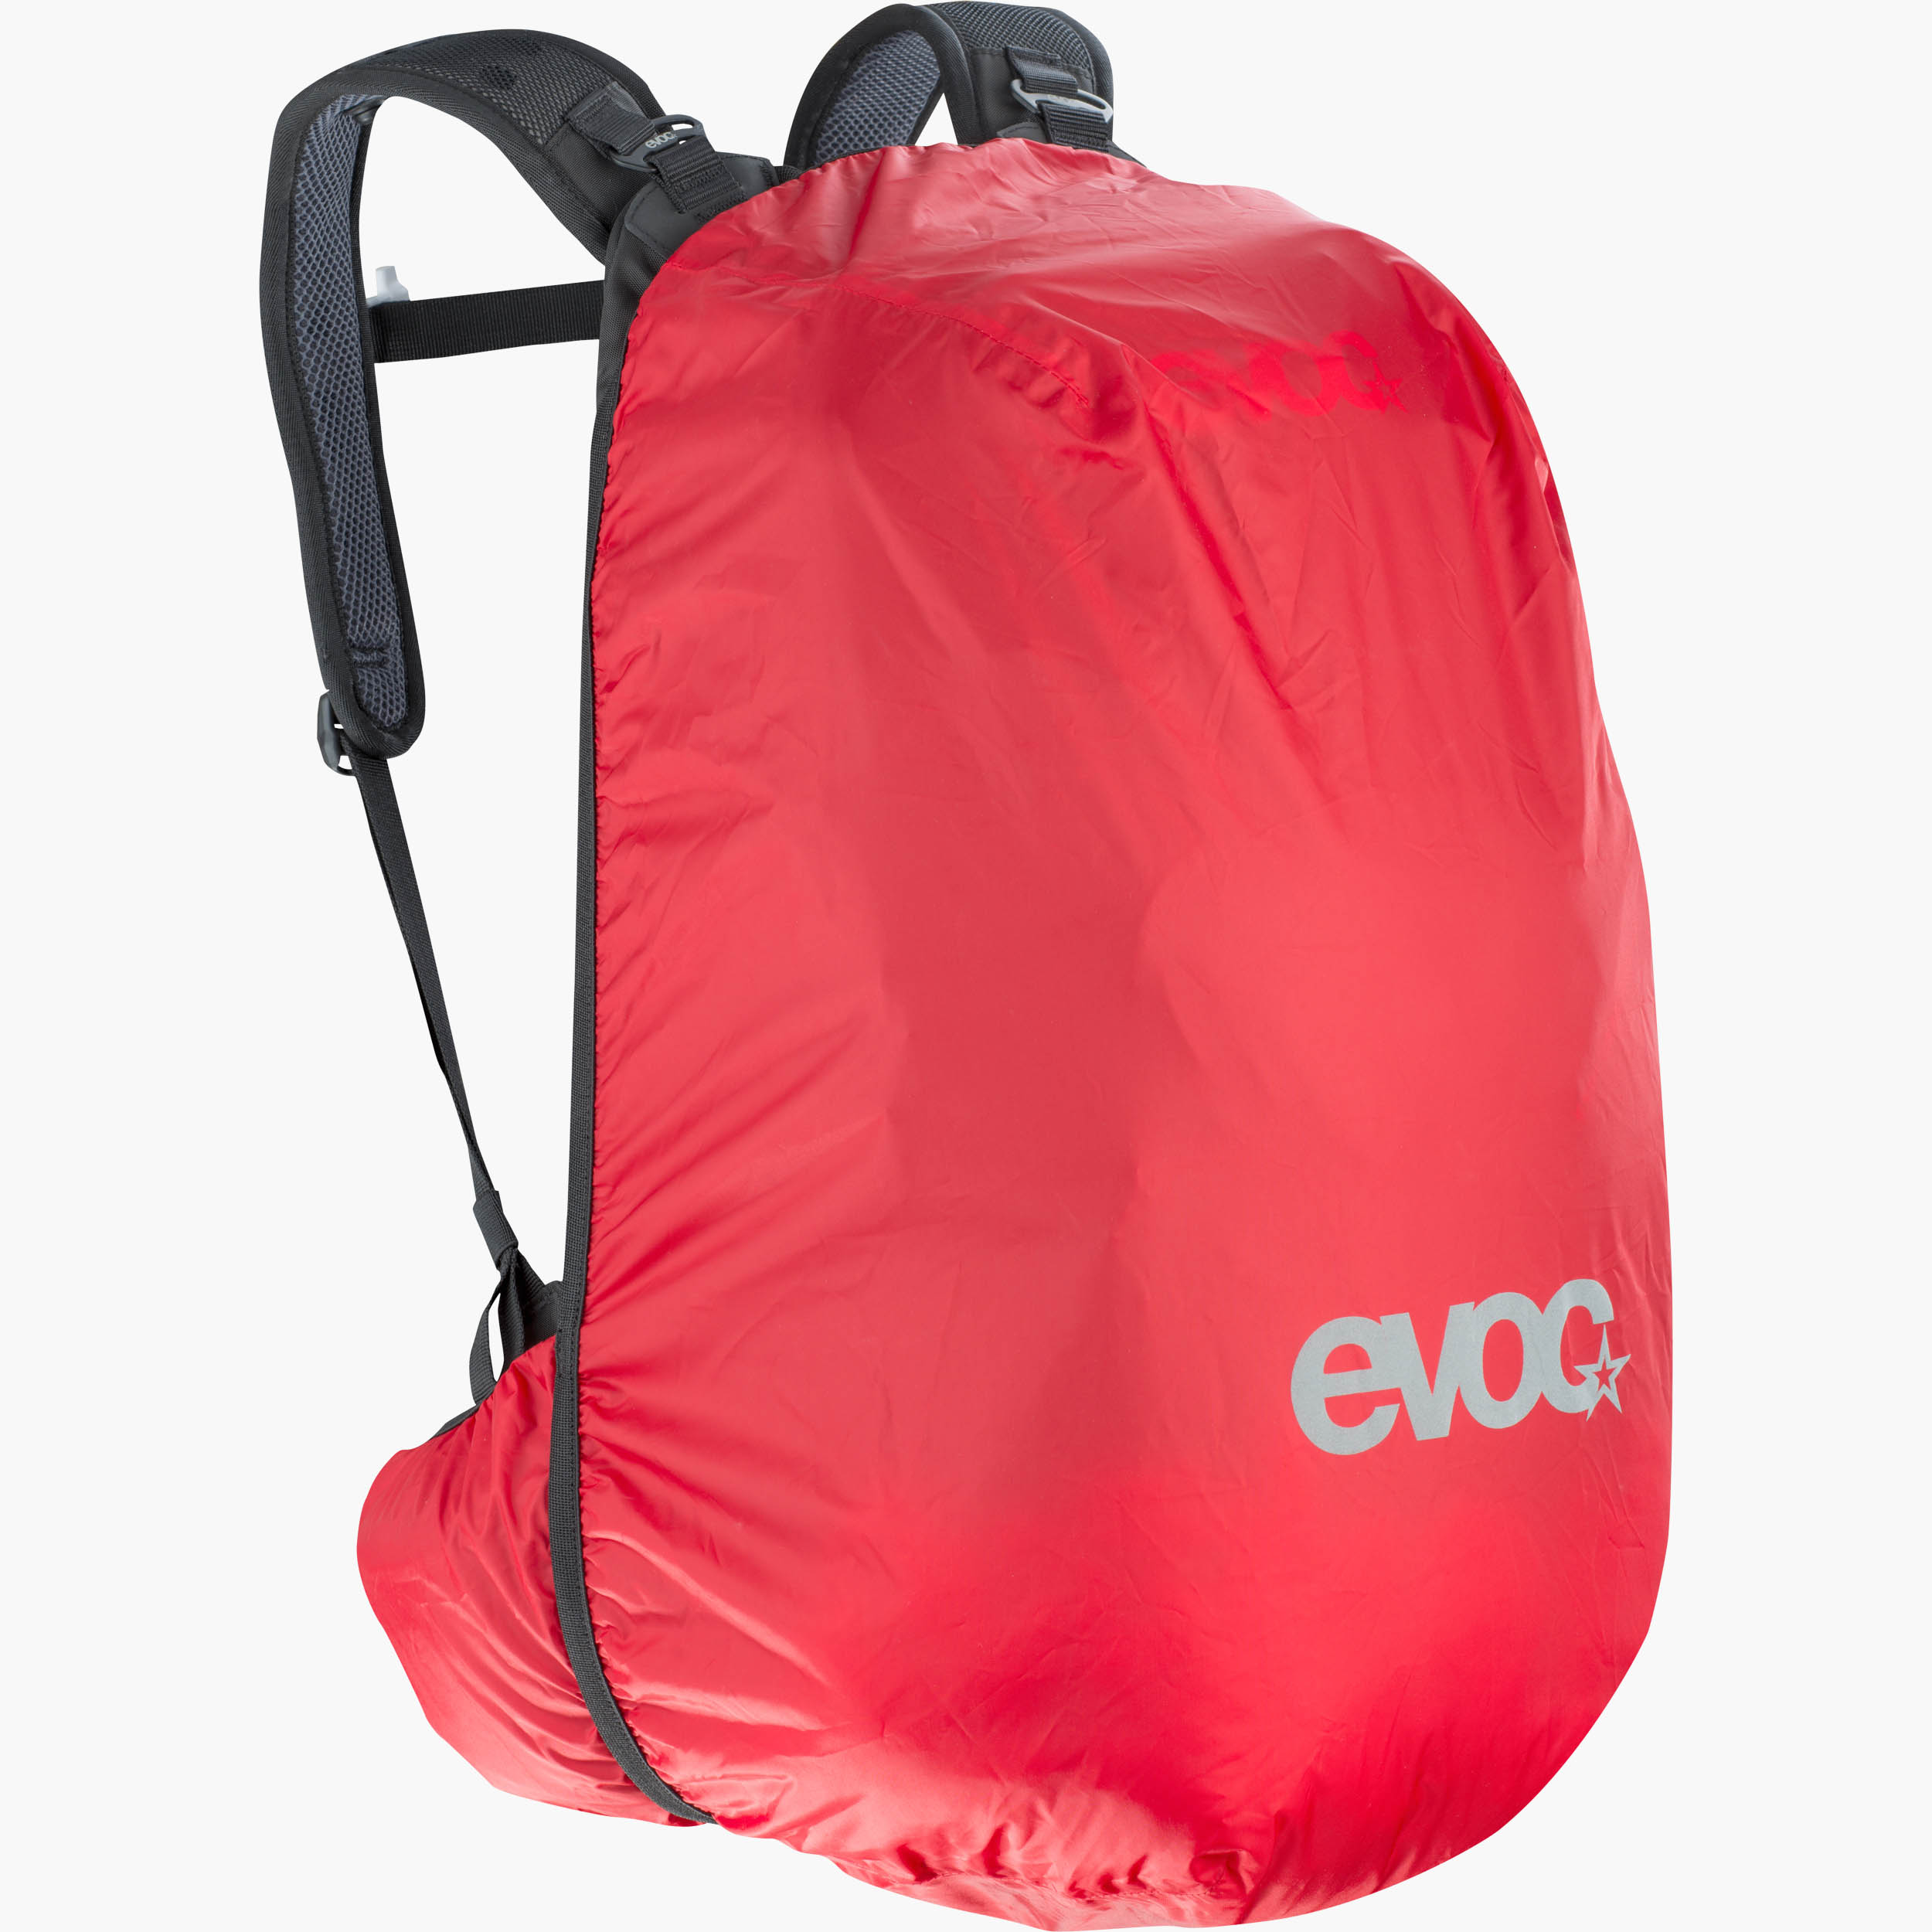 Evoc explorer 30 - Die TOP Produkte unter der Vielzahl an Evoc explorer 30!